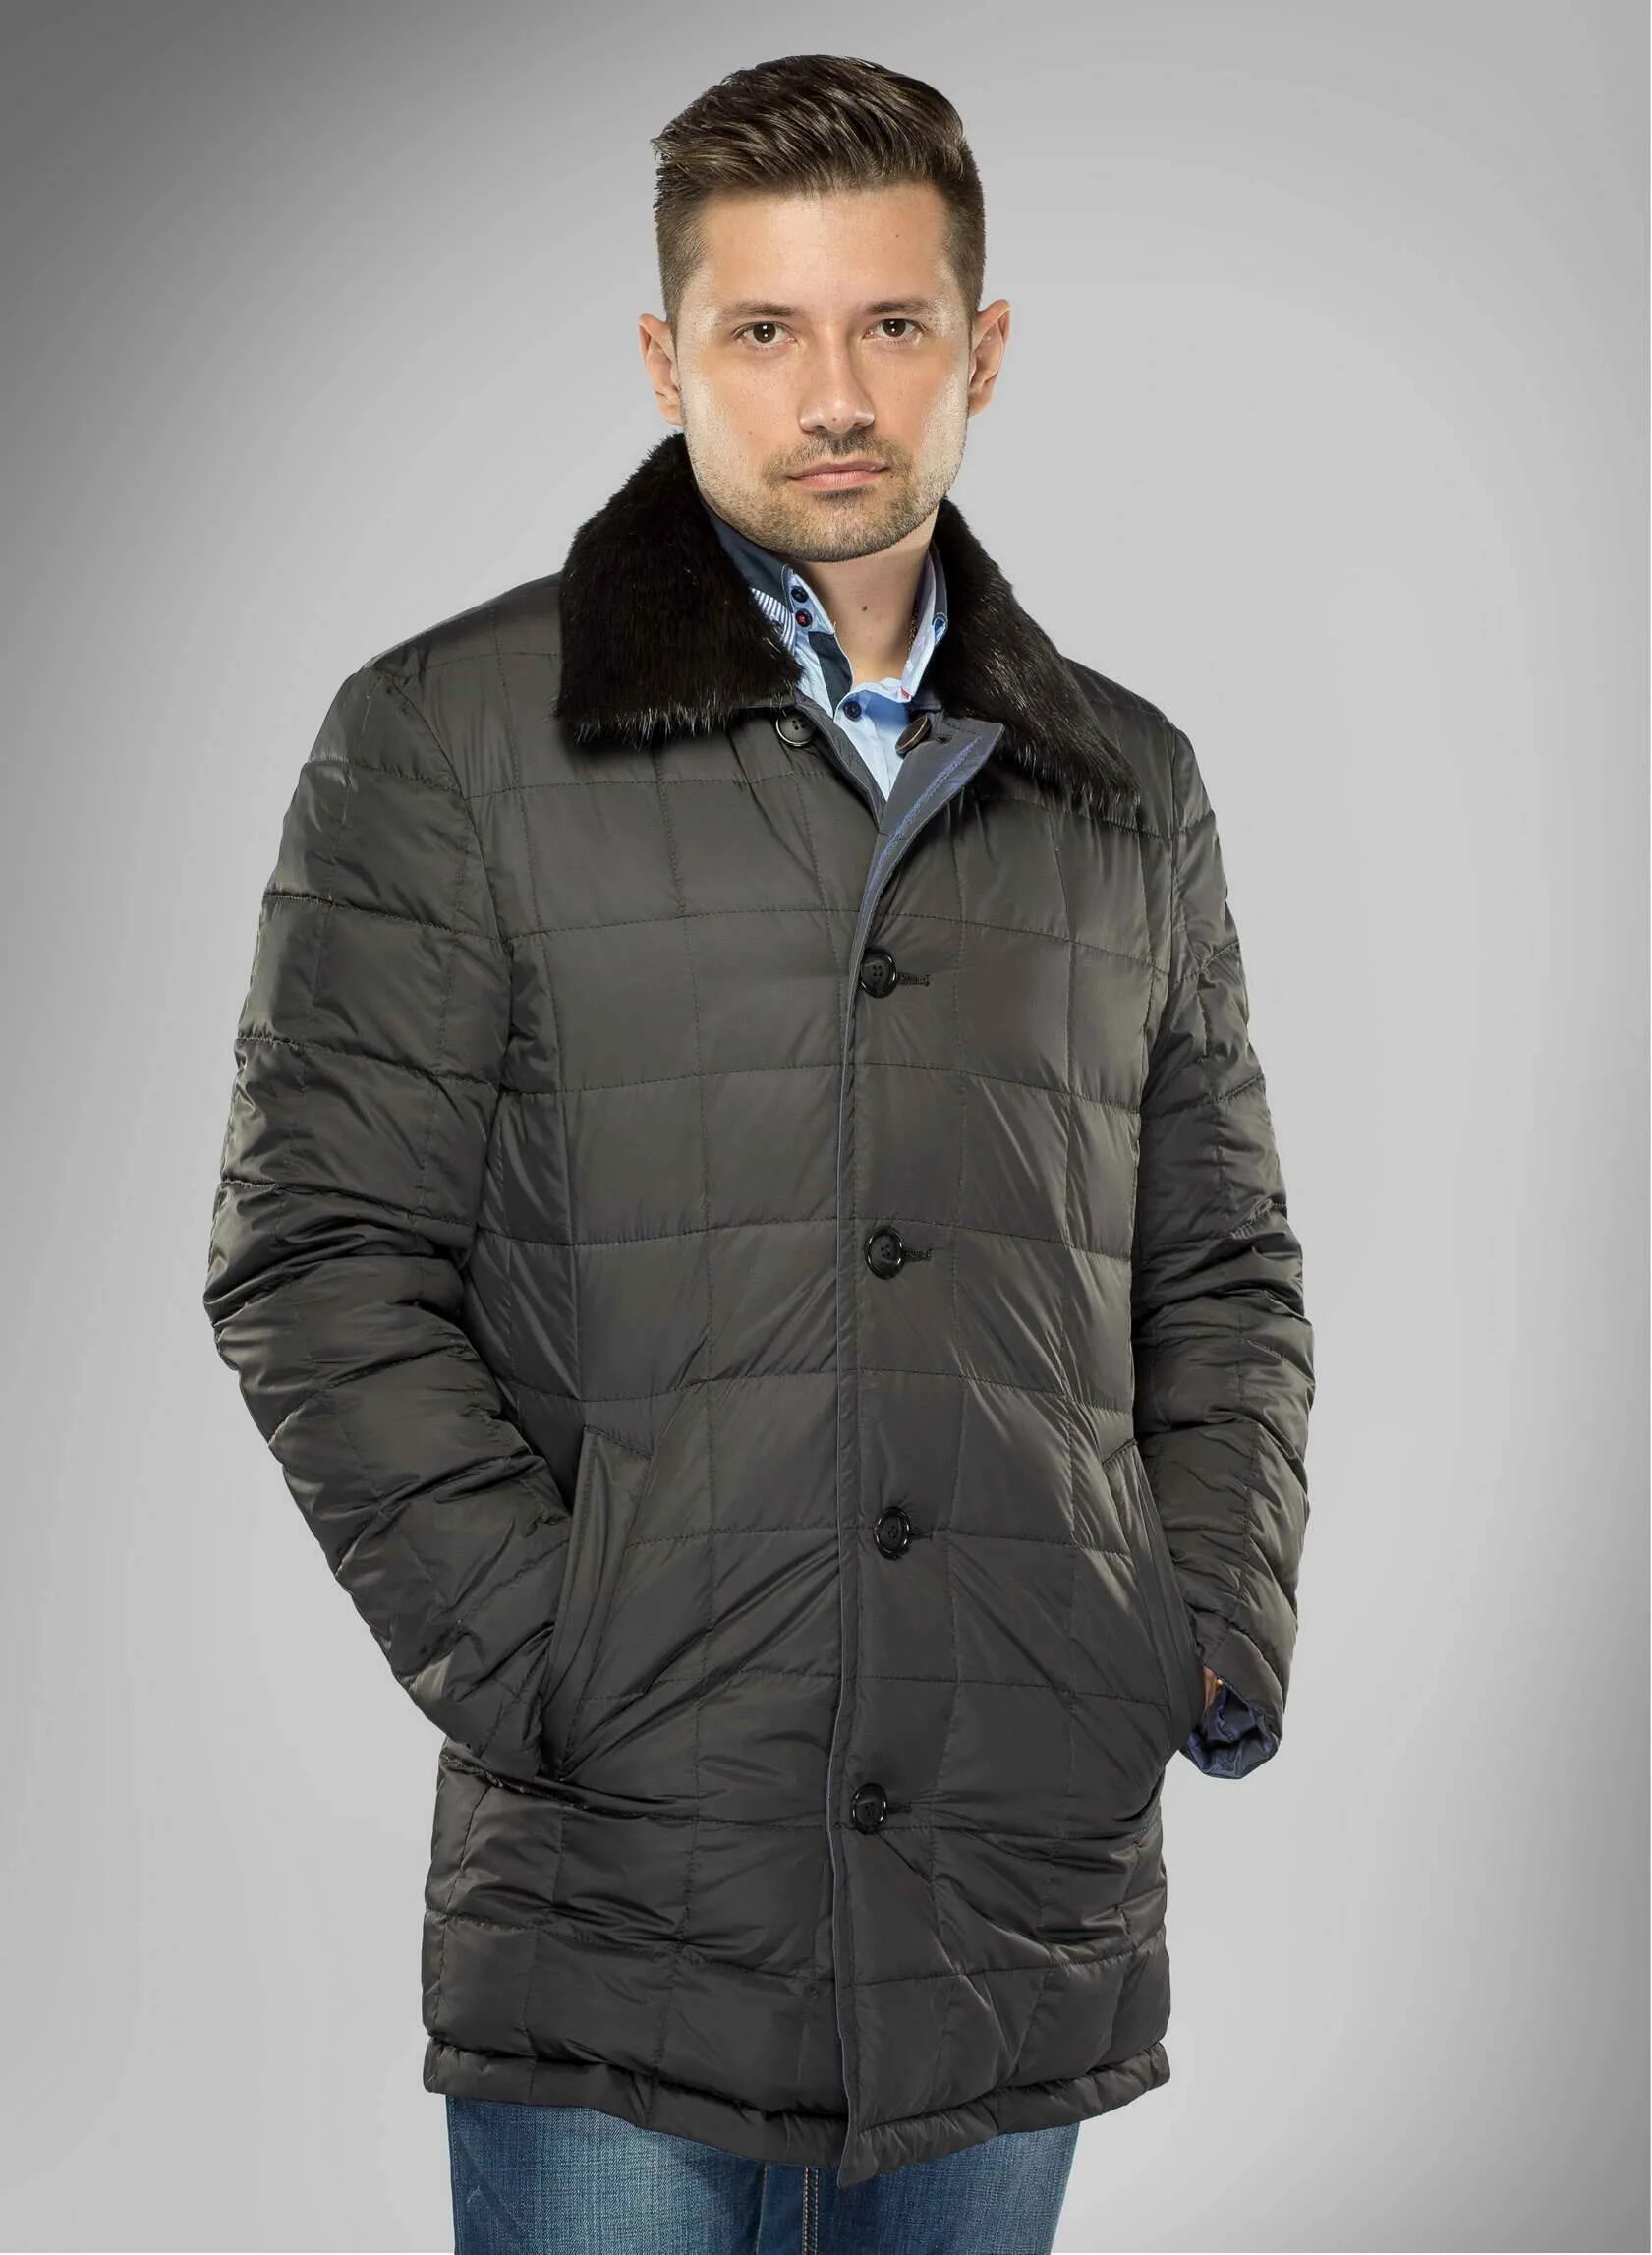 Авито москва купить мужскую. Зимние куртки мужские классические. Мужские куртки классика зима. Мужская верхняя одежда куртки. Зимняя куртка для мужчин классика.